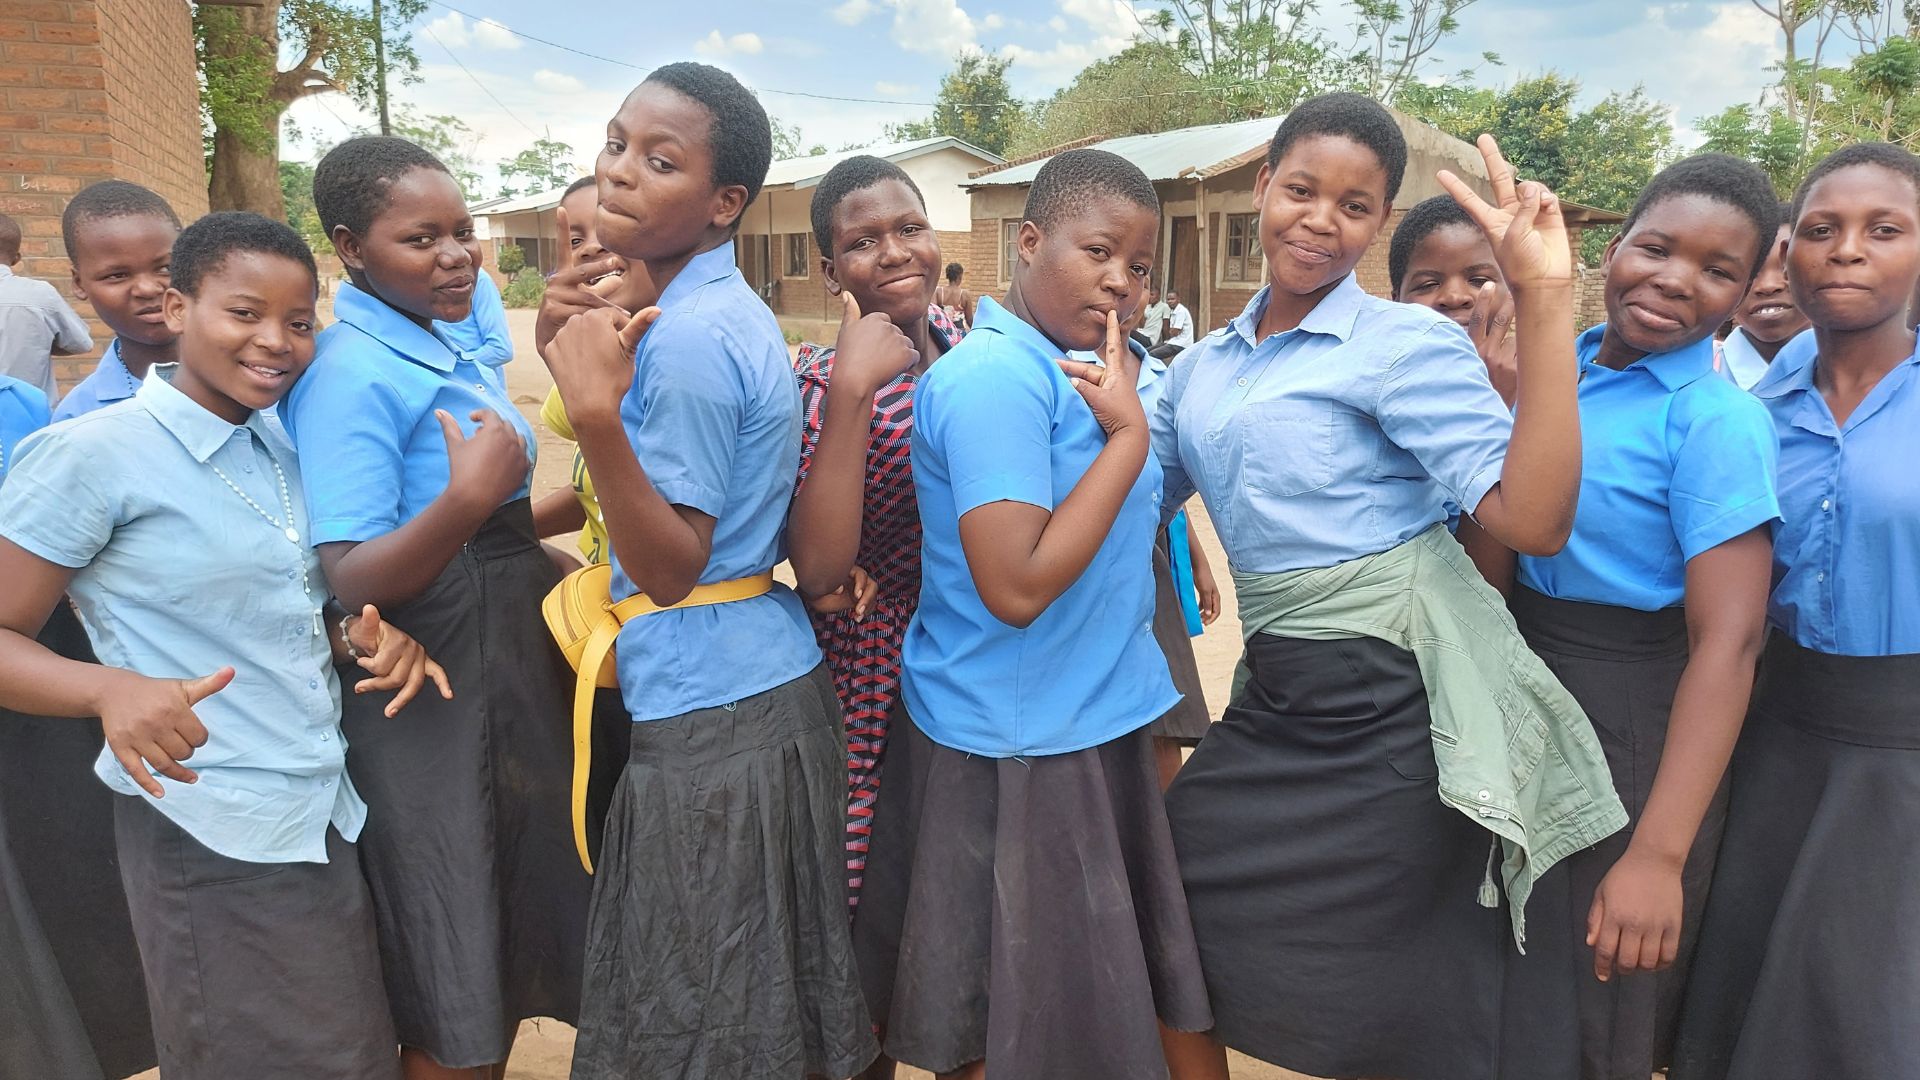 Ryhmä naisia ja tyttöjä Malawissa.